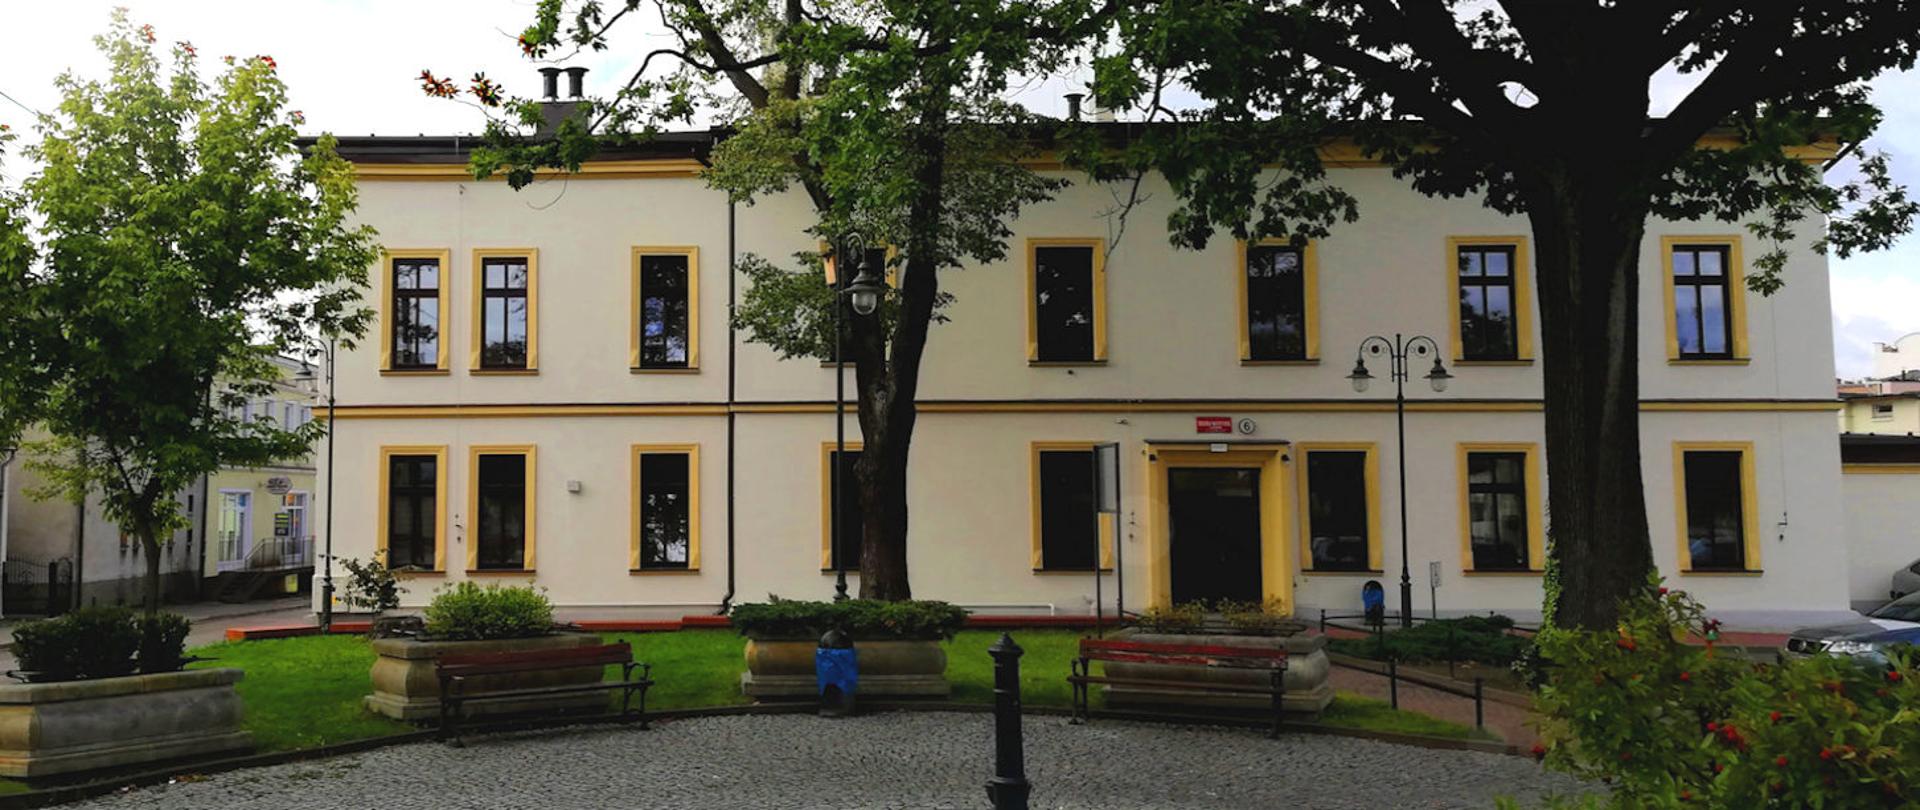 Zdjęcie przedstawia widok Szkoły Muzycznej I stopnia w Chojnicach od strony ul. Bankowej. Na zdjęciu widzimy front budynku szkolnego otoczony zielenią i małym placem z ławkami.